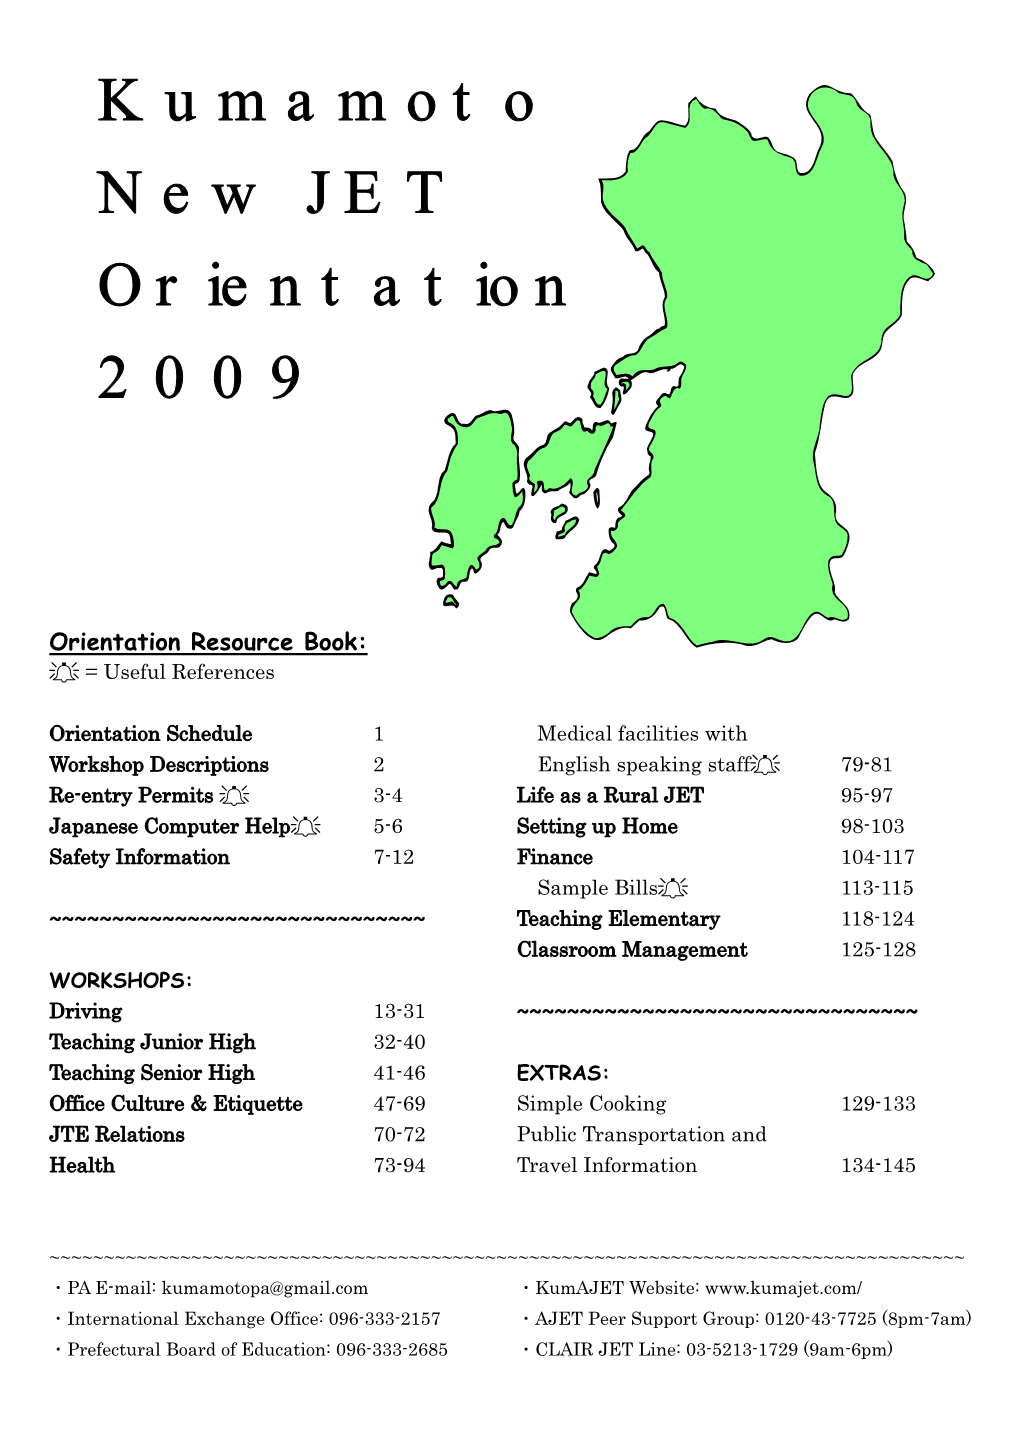 Kumamoto New JET Orientation 2009